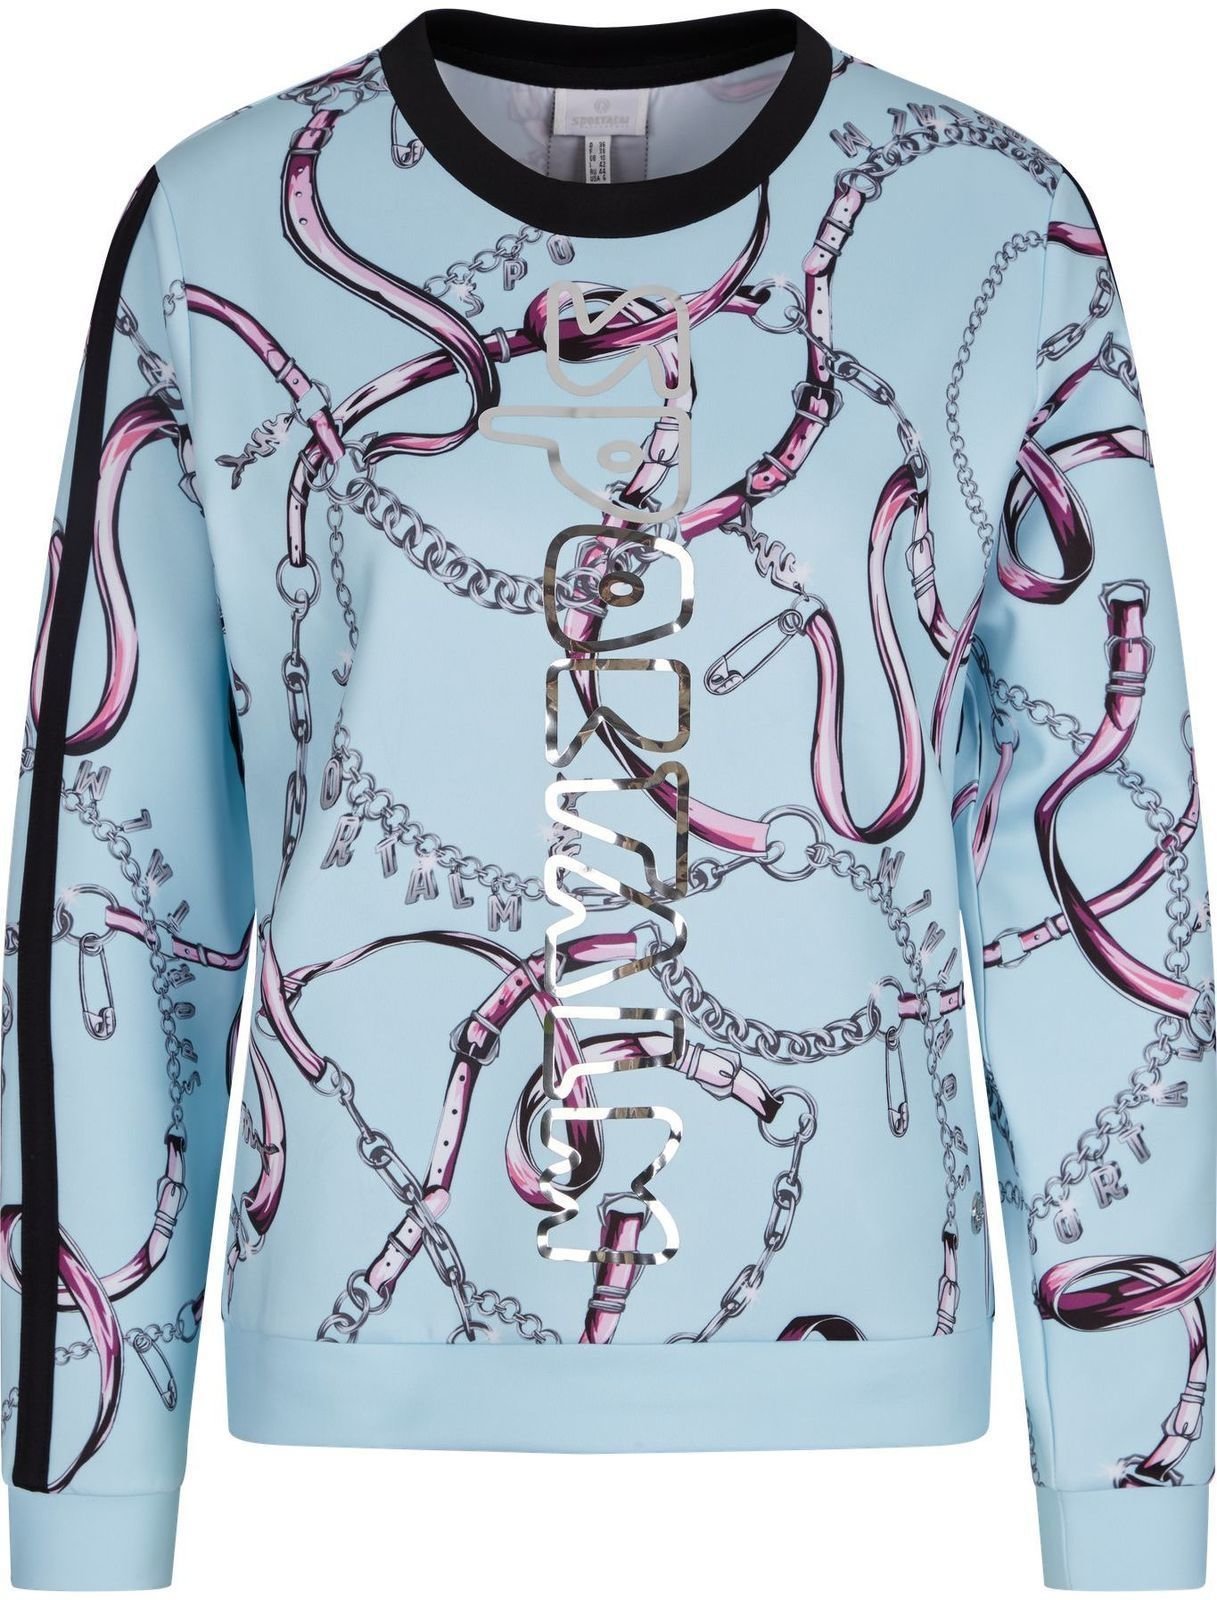 Bluza z kapturem/Sweter Sportalm Capitano Womens Sweater Mint 36